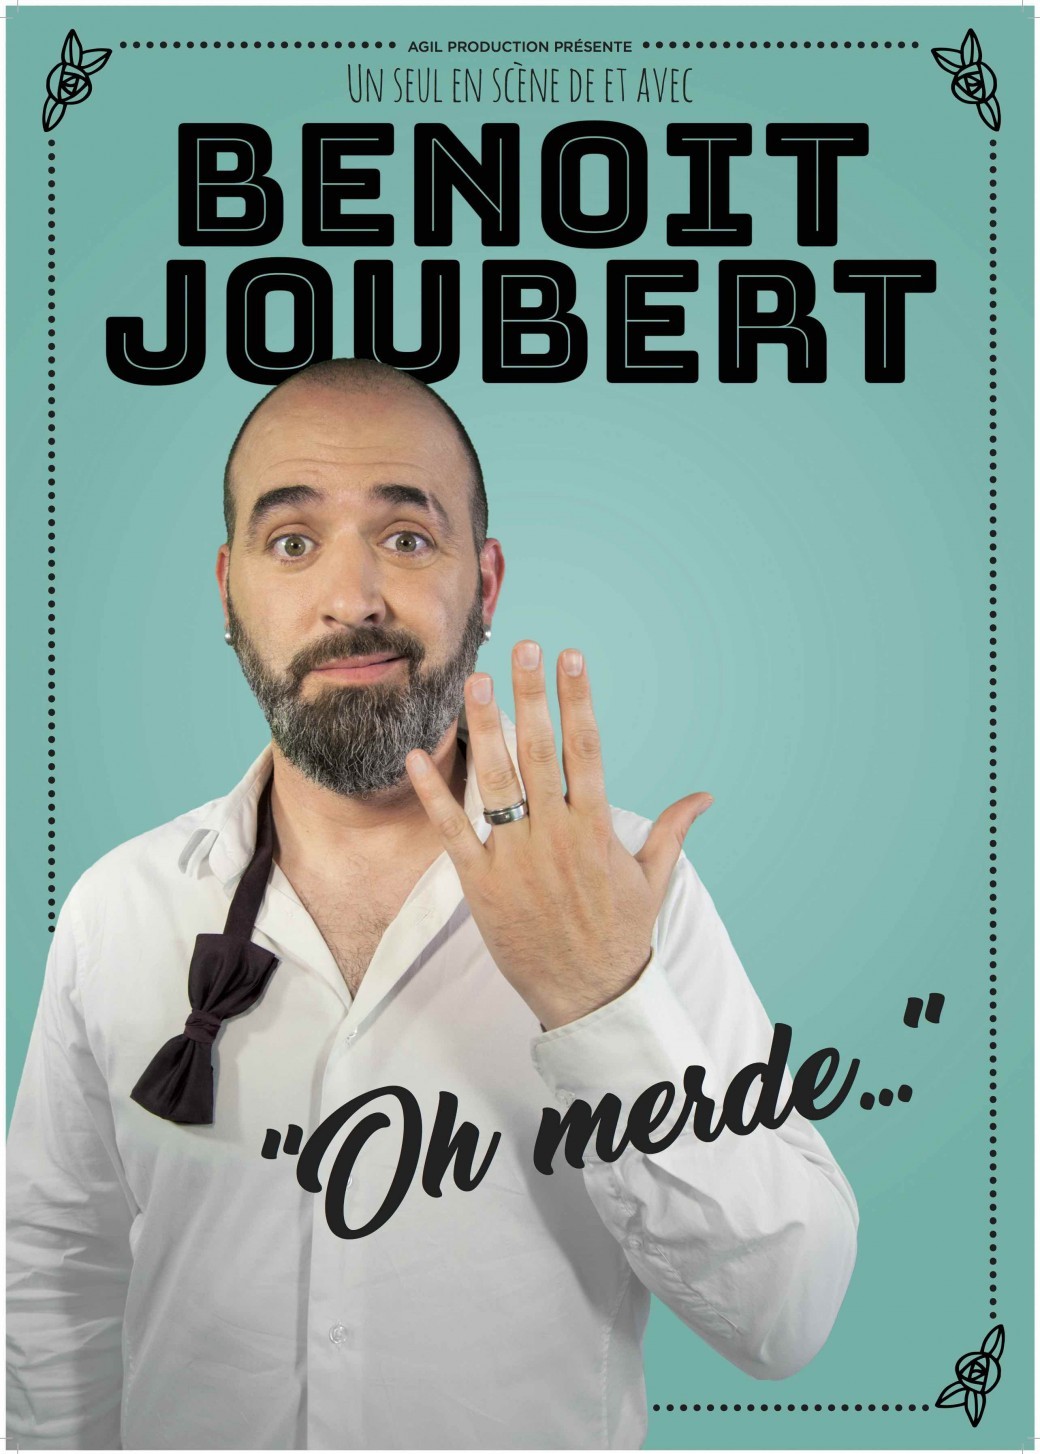 Benoit Joubert - "Oh Merde..."